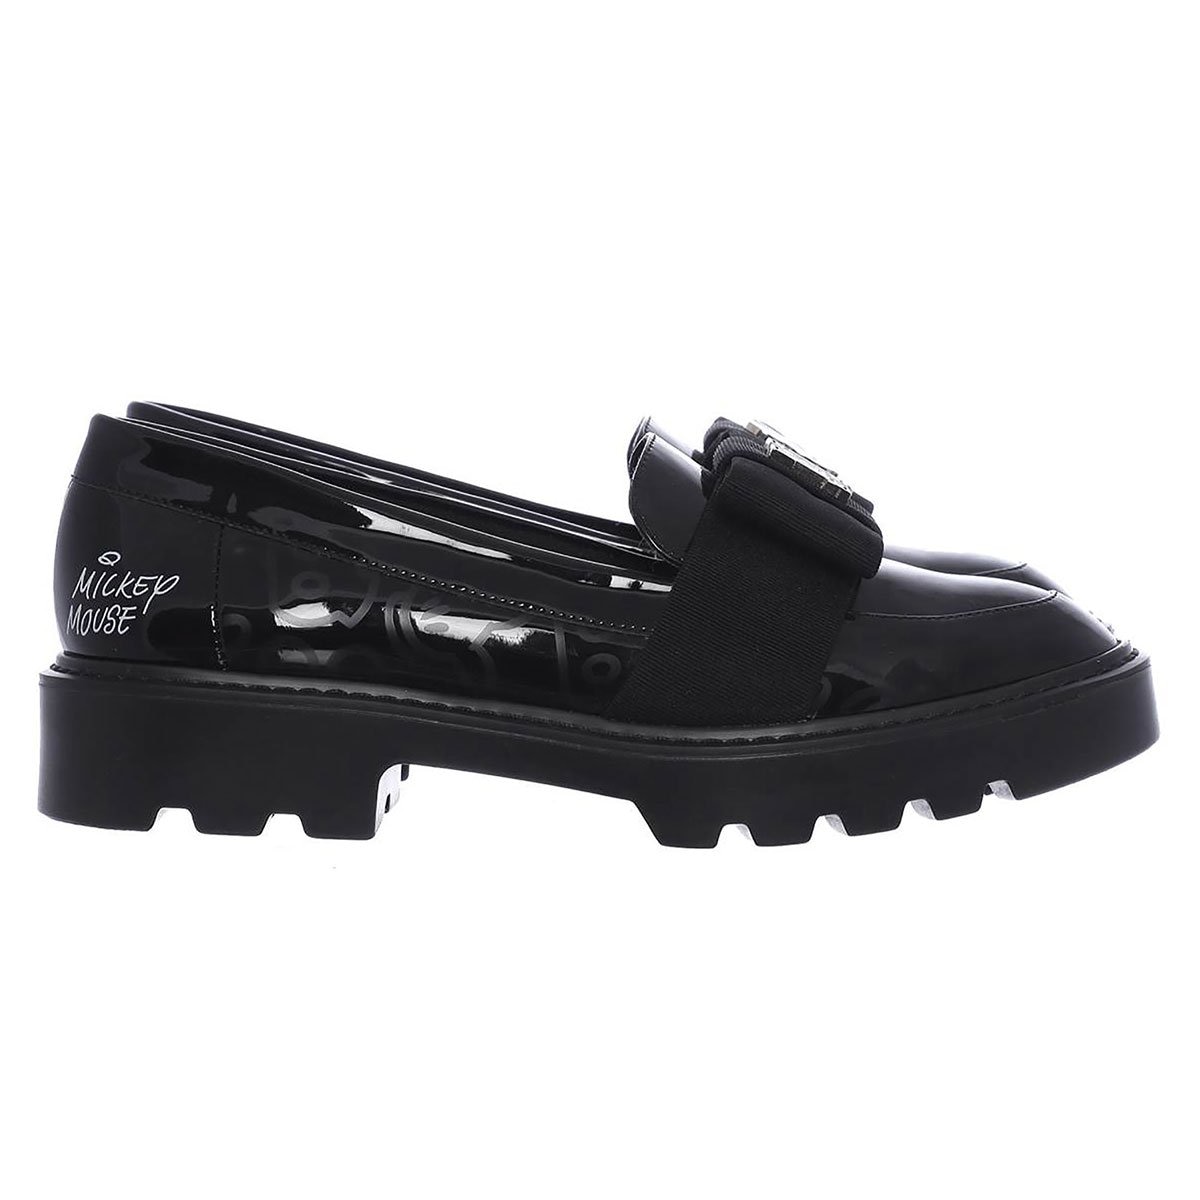 Zapato Tipo Loafer con Moño al Frente Colección Mickey And Friends Color Negro W Capsule